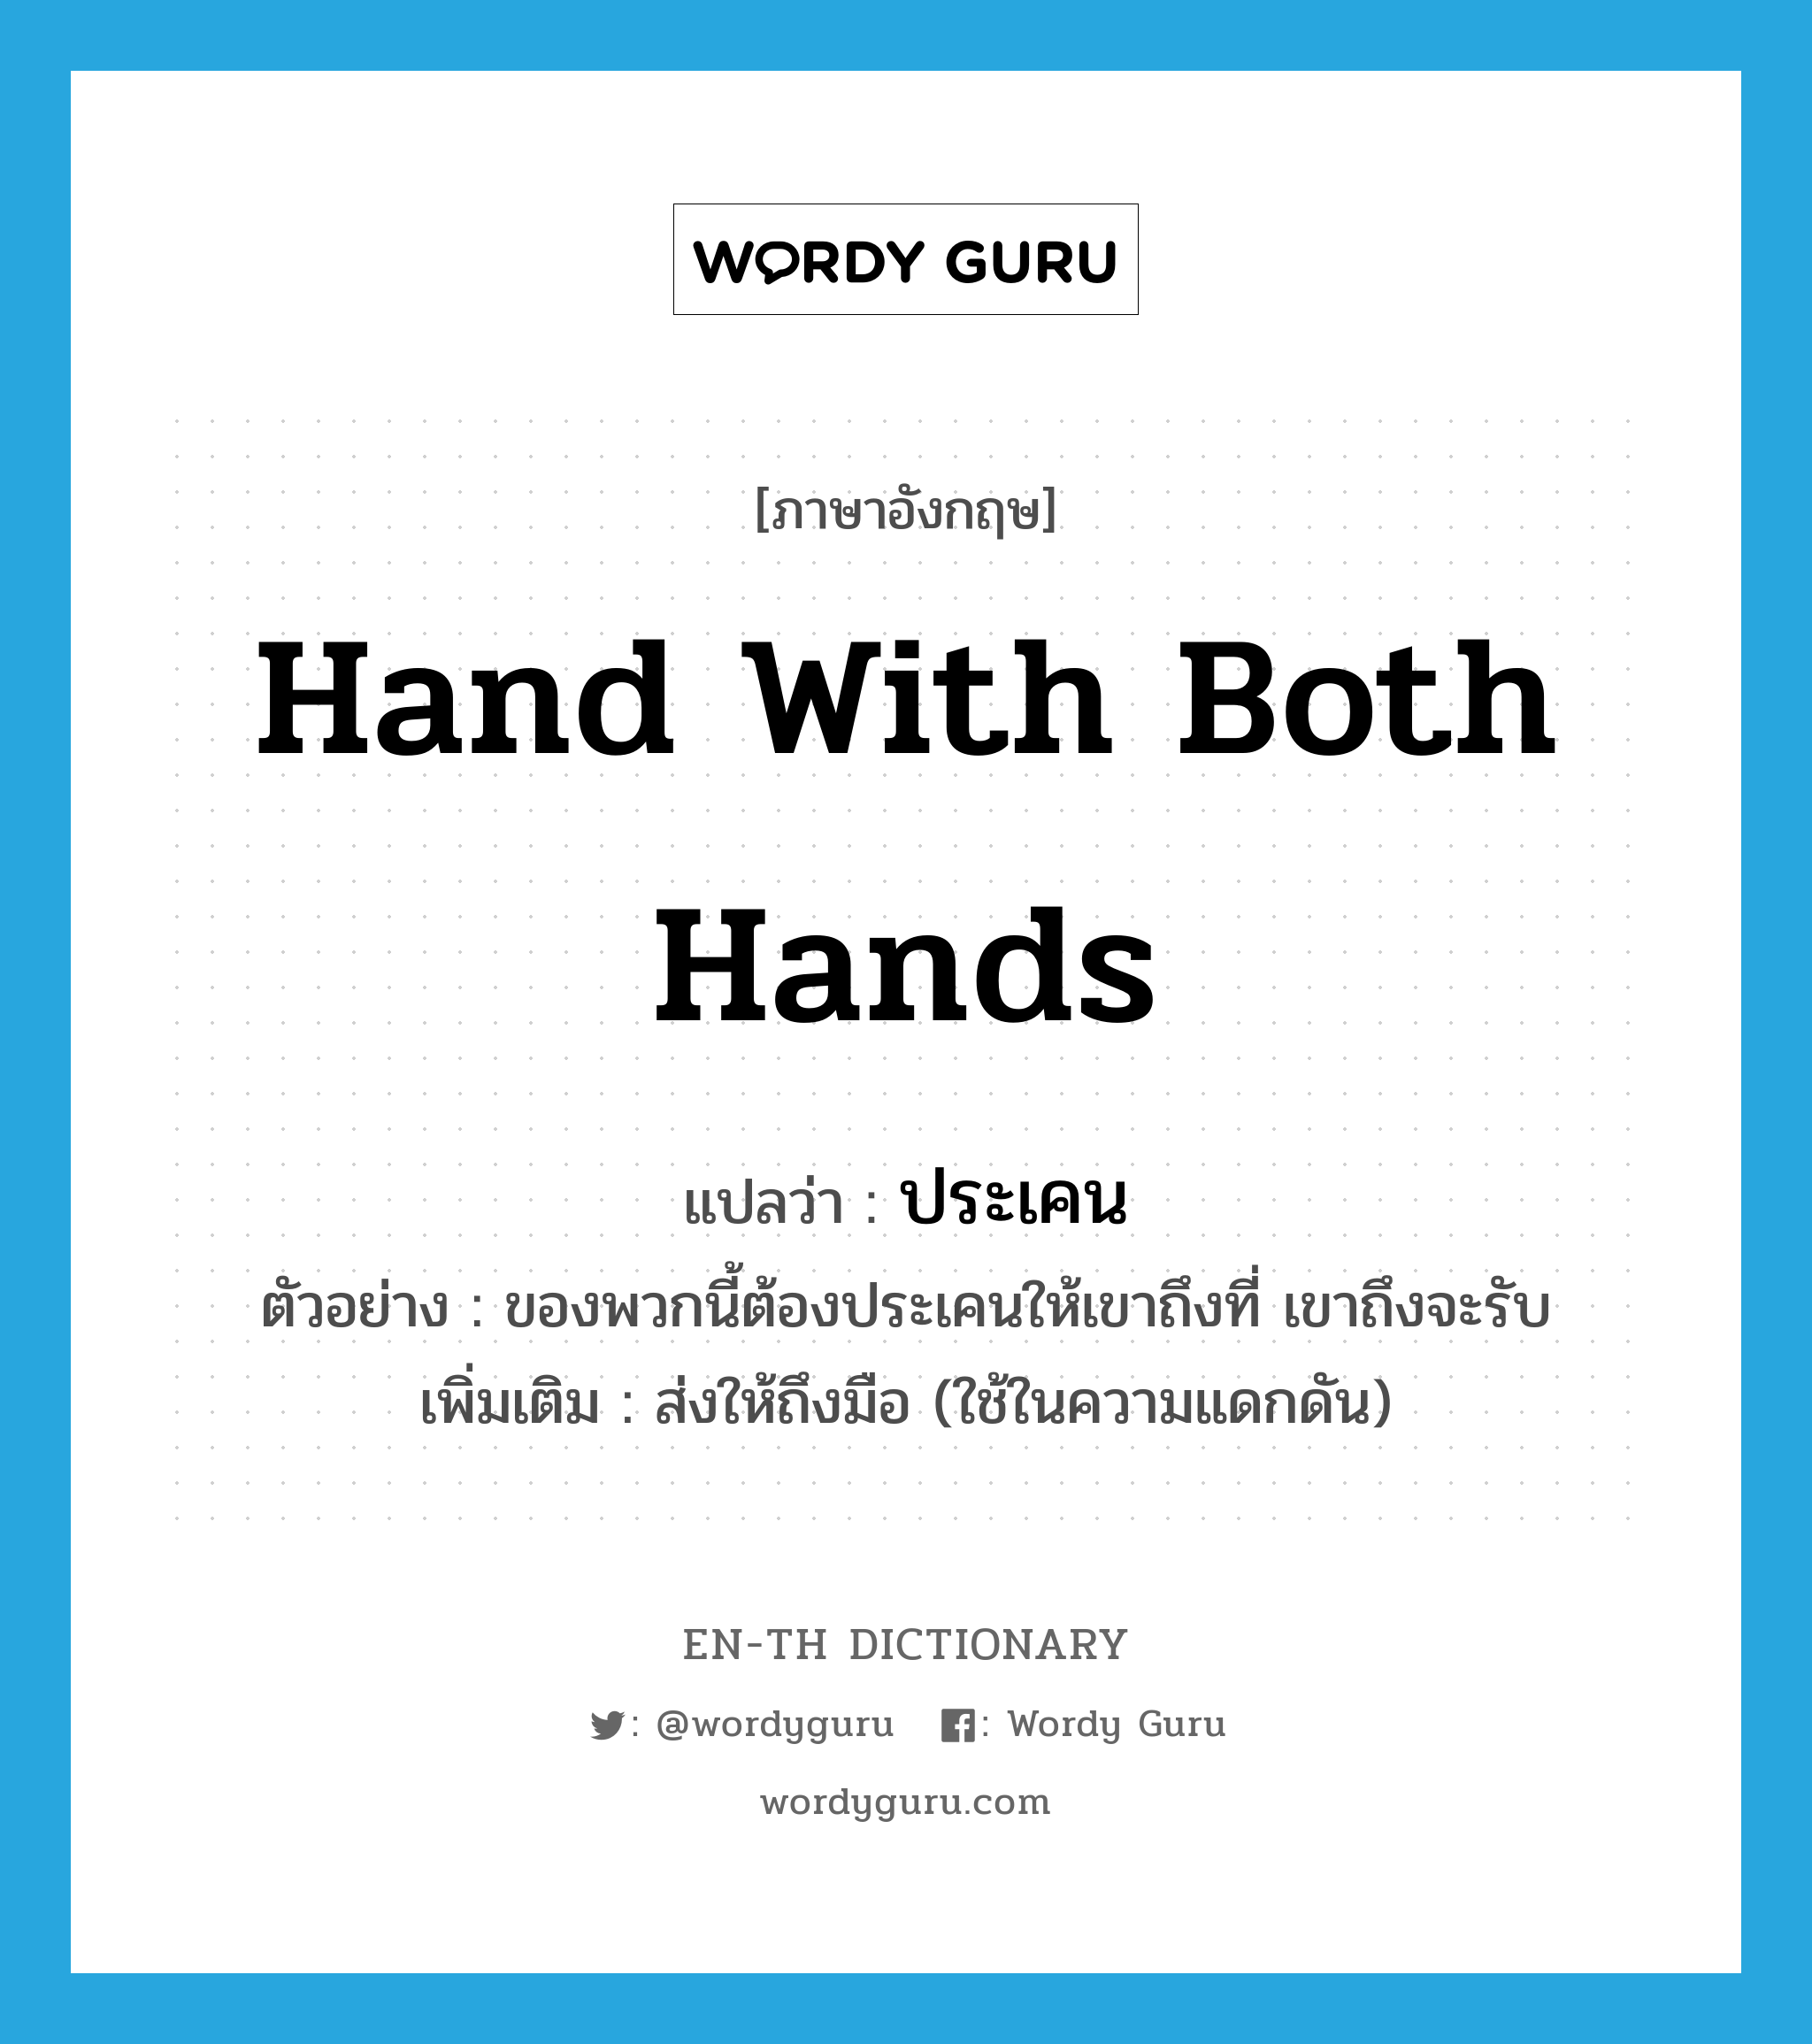 hand with both hands แปลว่า?, คำศัพท์ภาษาอังกฤษ hand with both hands แปลว่า ประเคน ประเภท V ตัวอย่าง ของพวกนี้ต้องประเคนให้เขาถึงที่ เขาถึงจะรับ เพิ่มเติม ส่งให้ถึงมือ (ใช้ในความแดกดัน) หมวด V